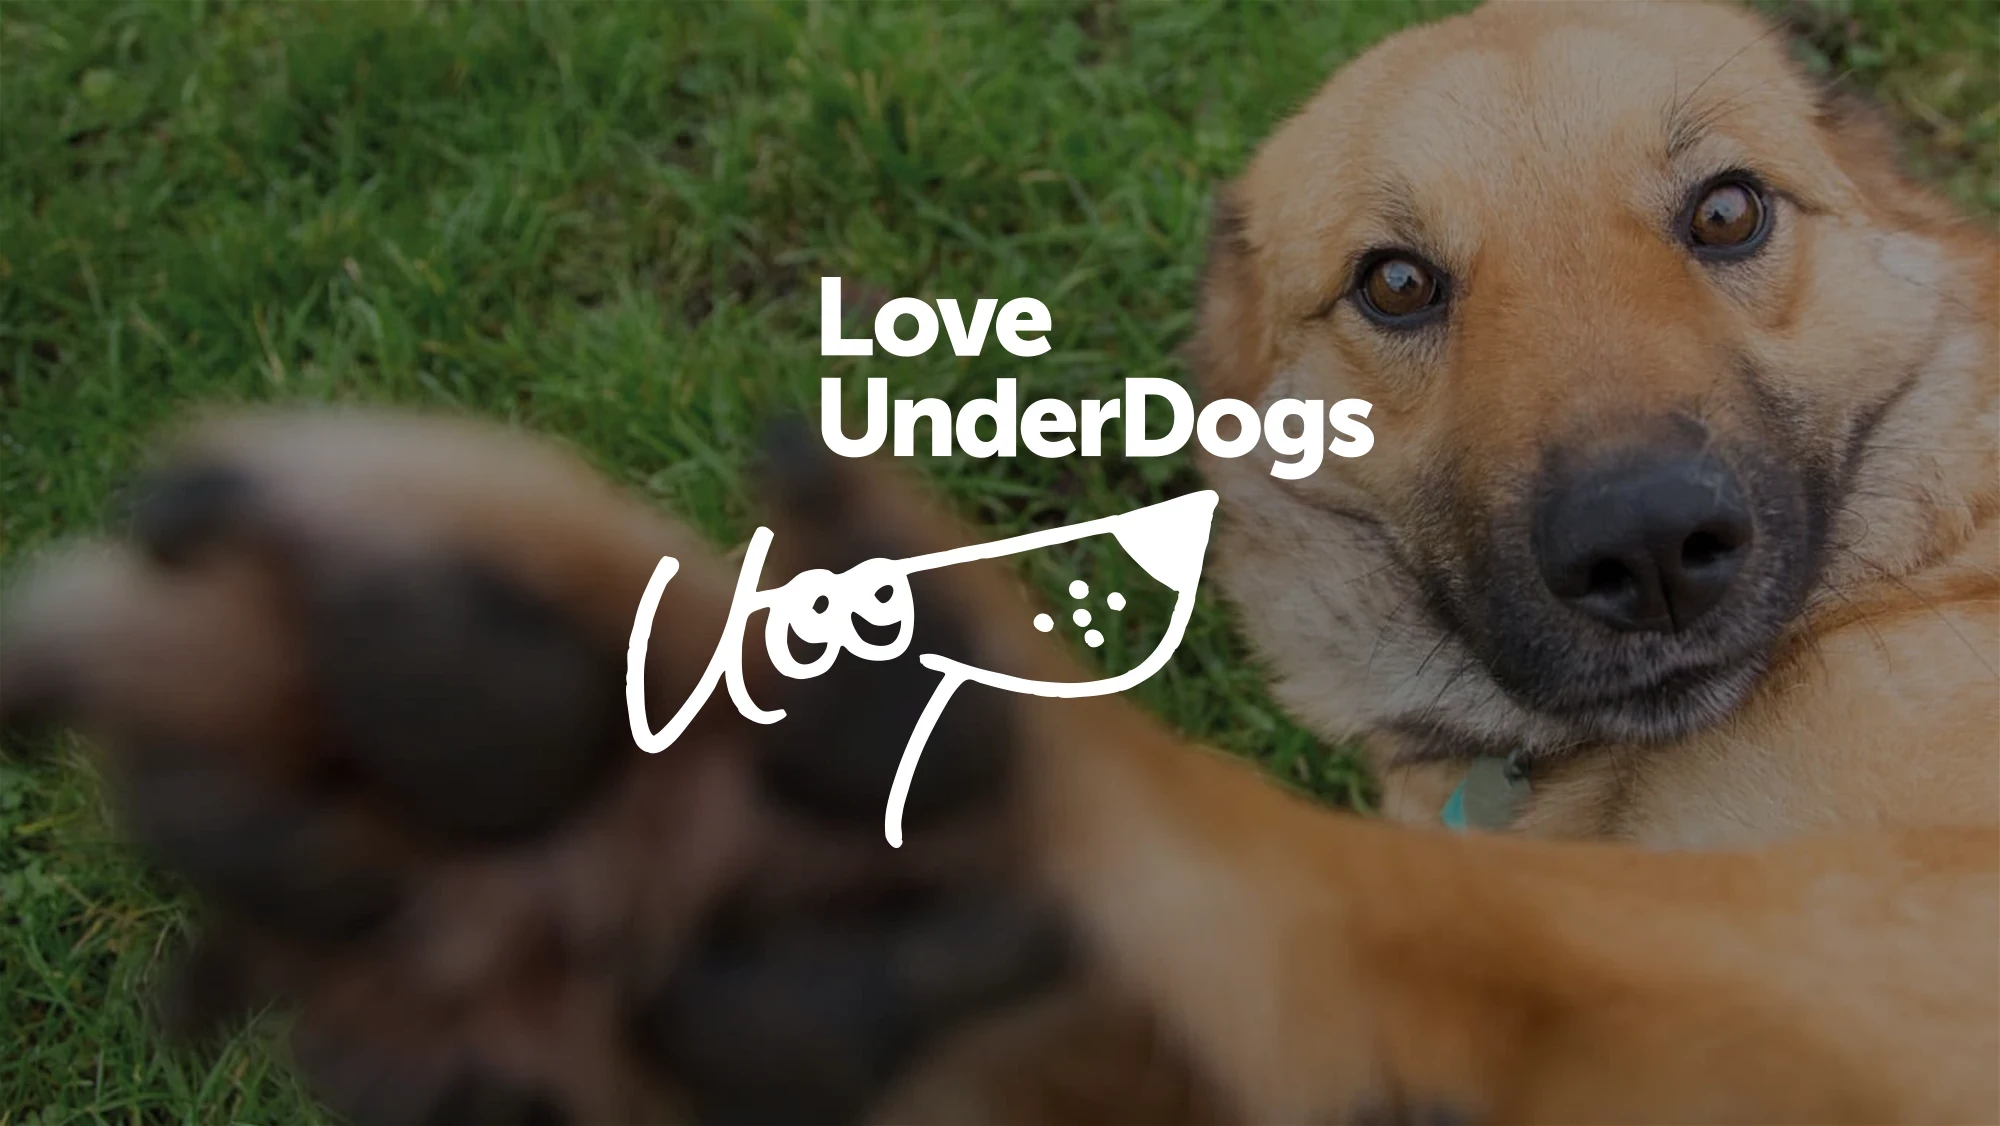 Love Underdogs banner